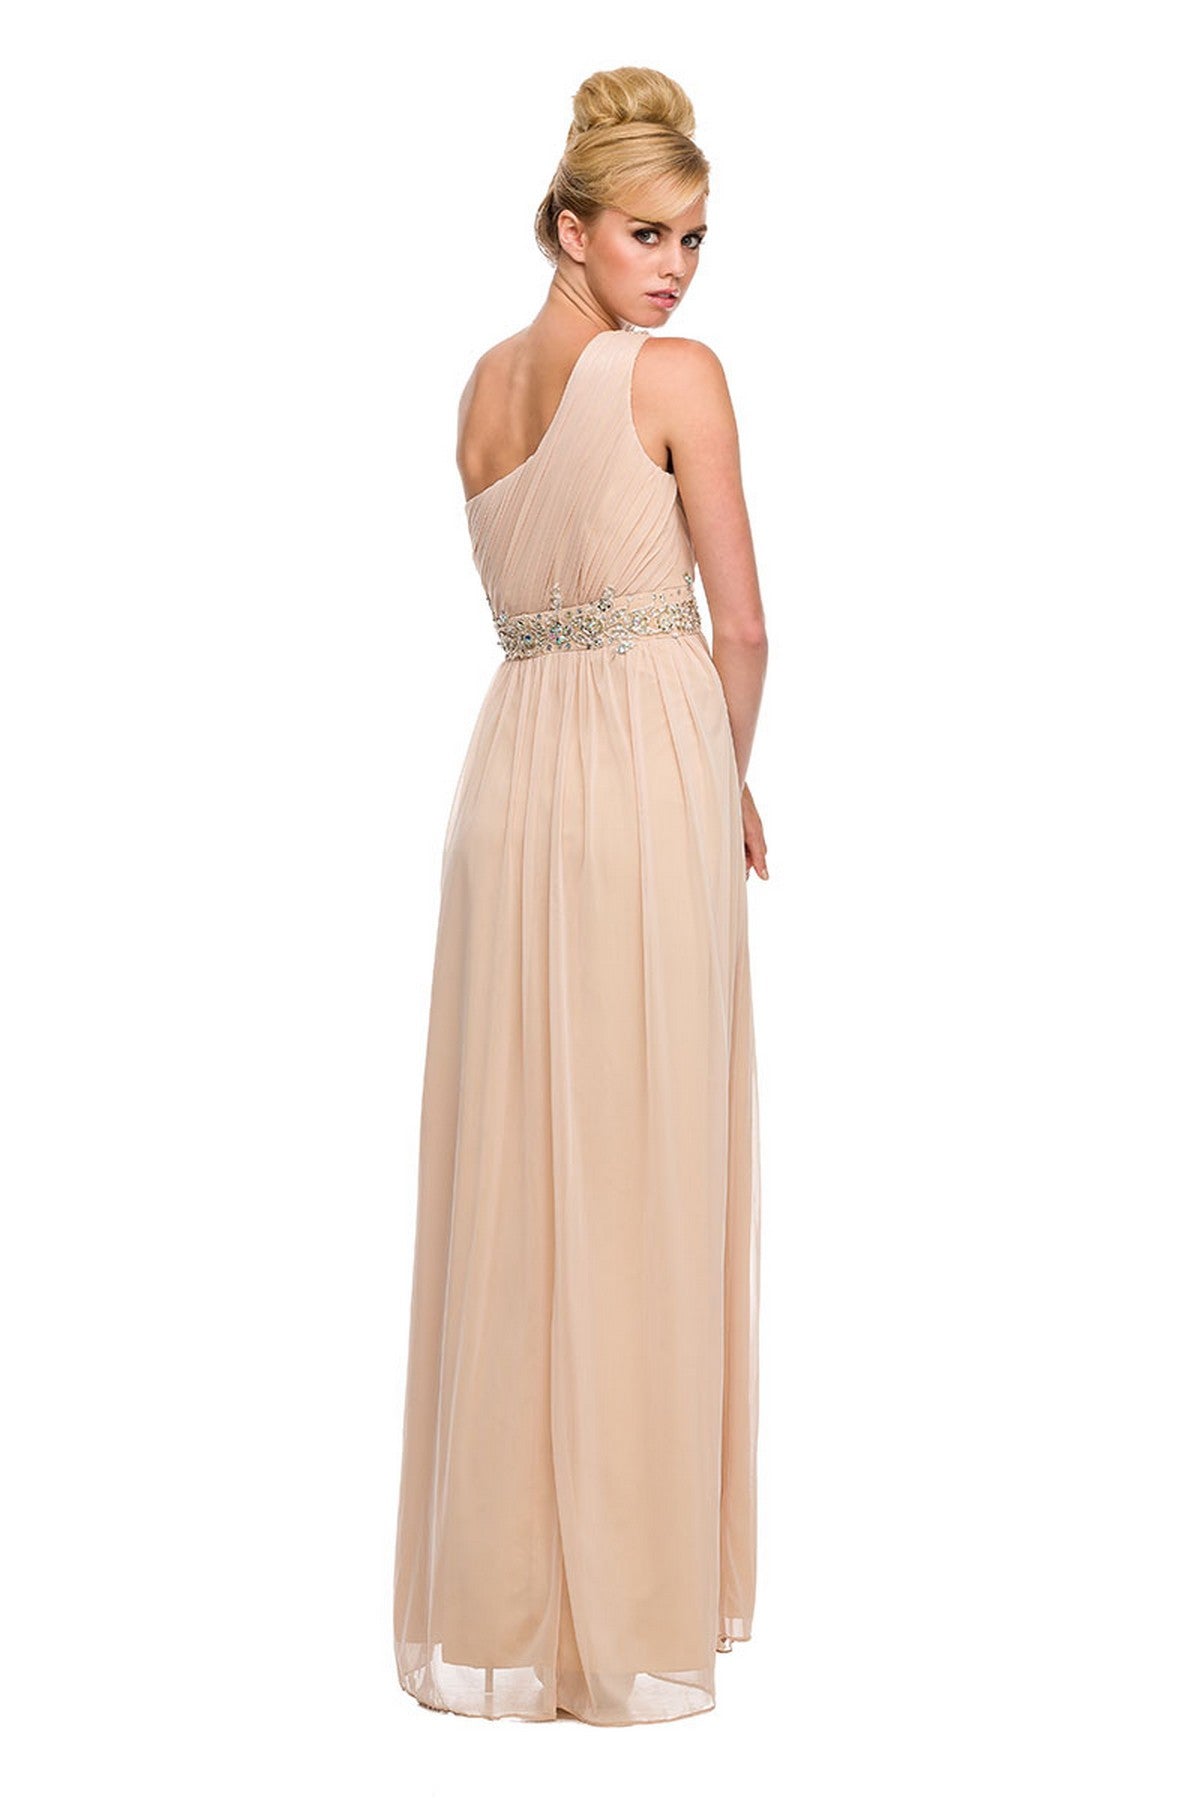 Nox Anabel 2688 Long One Shoulder Formal Dress